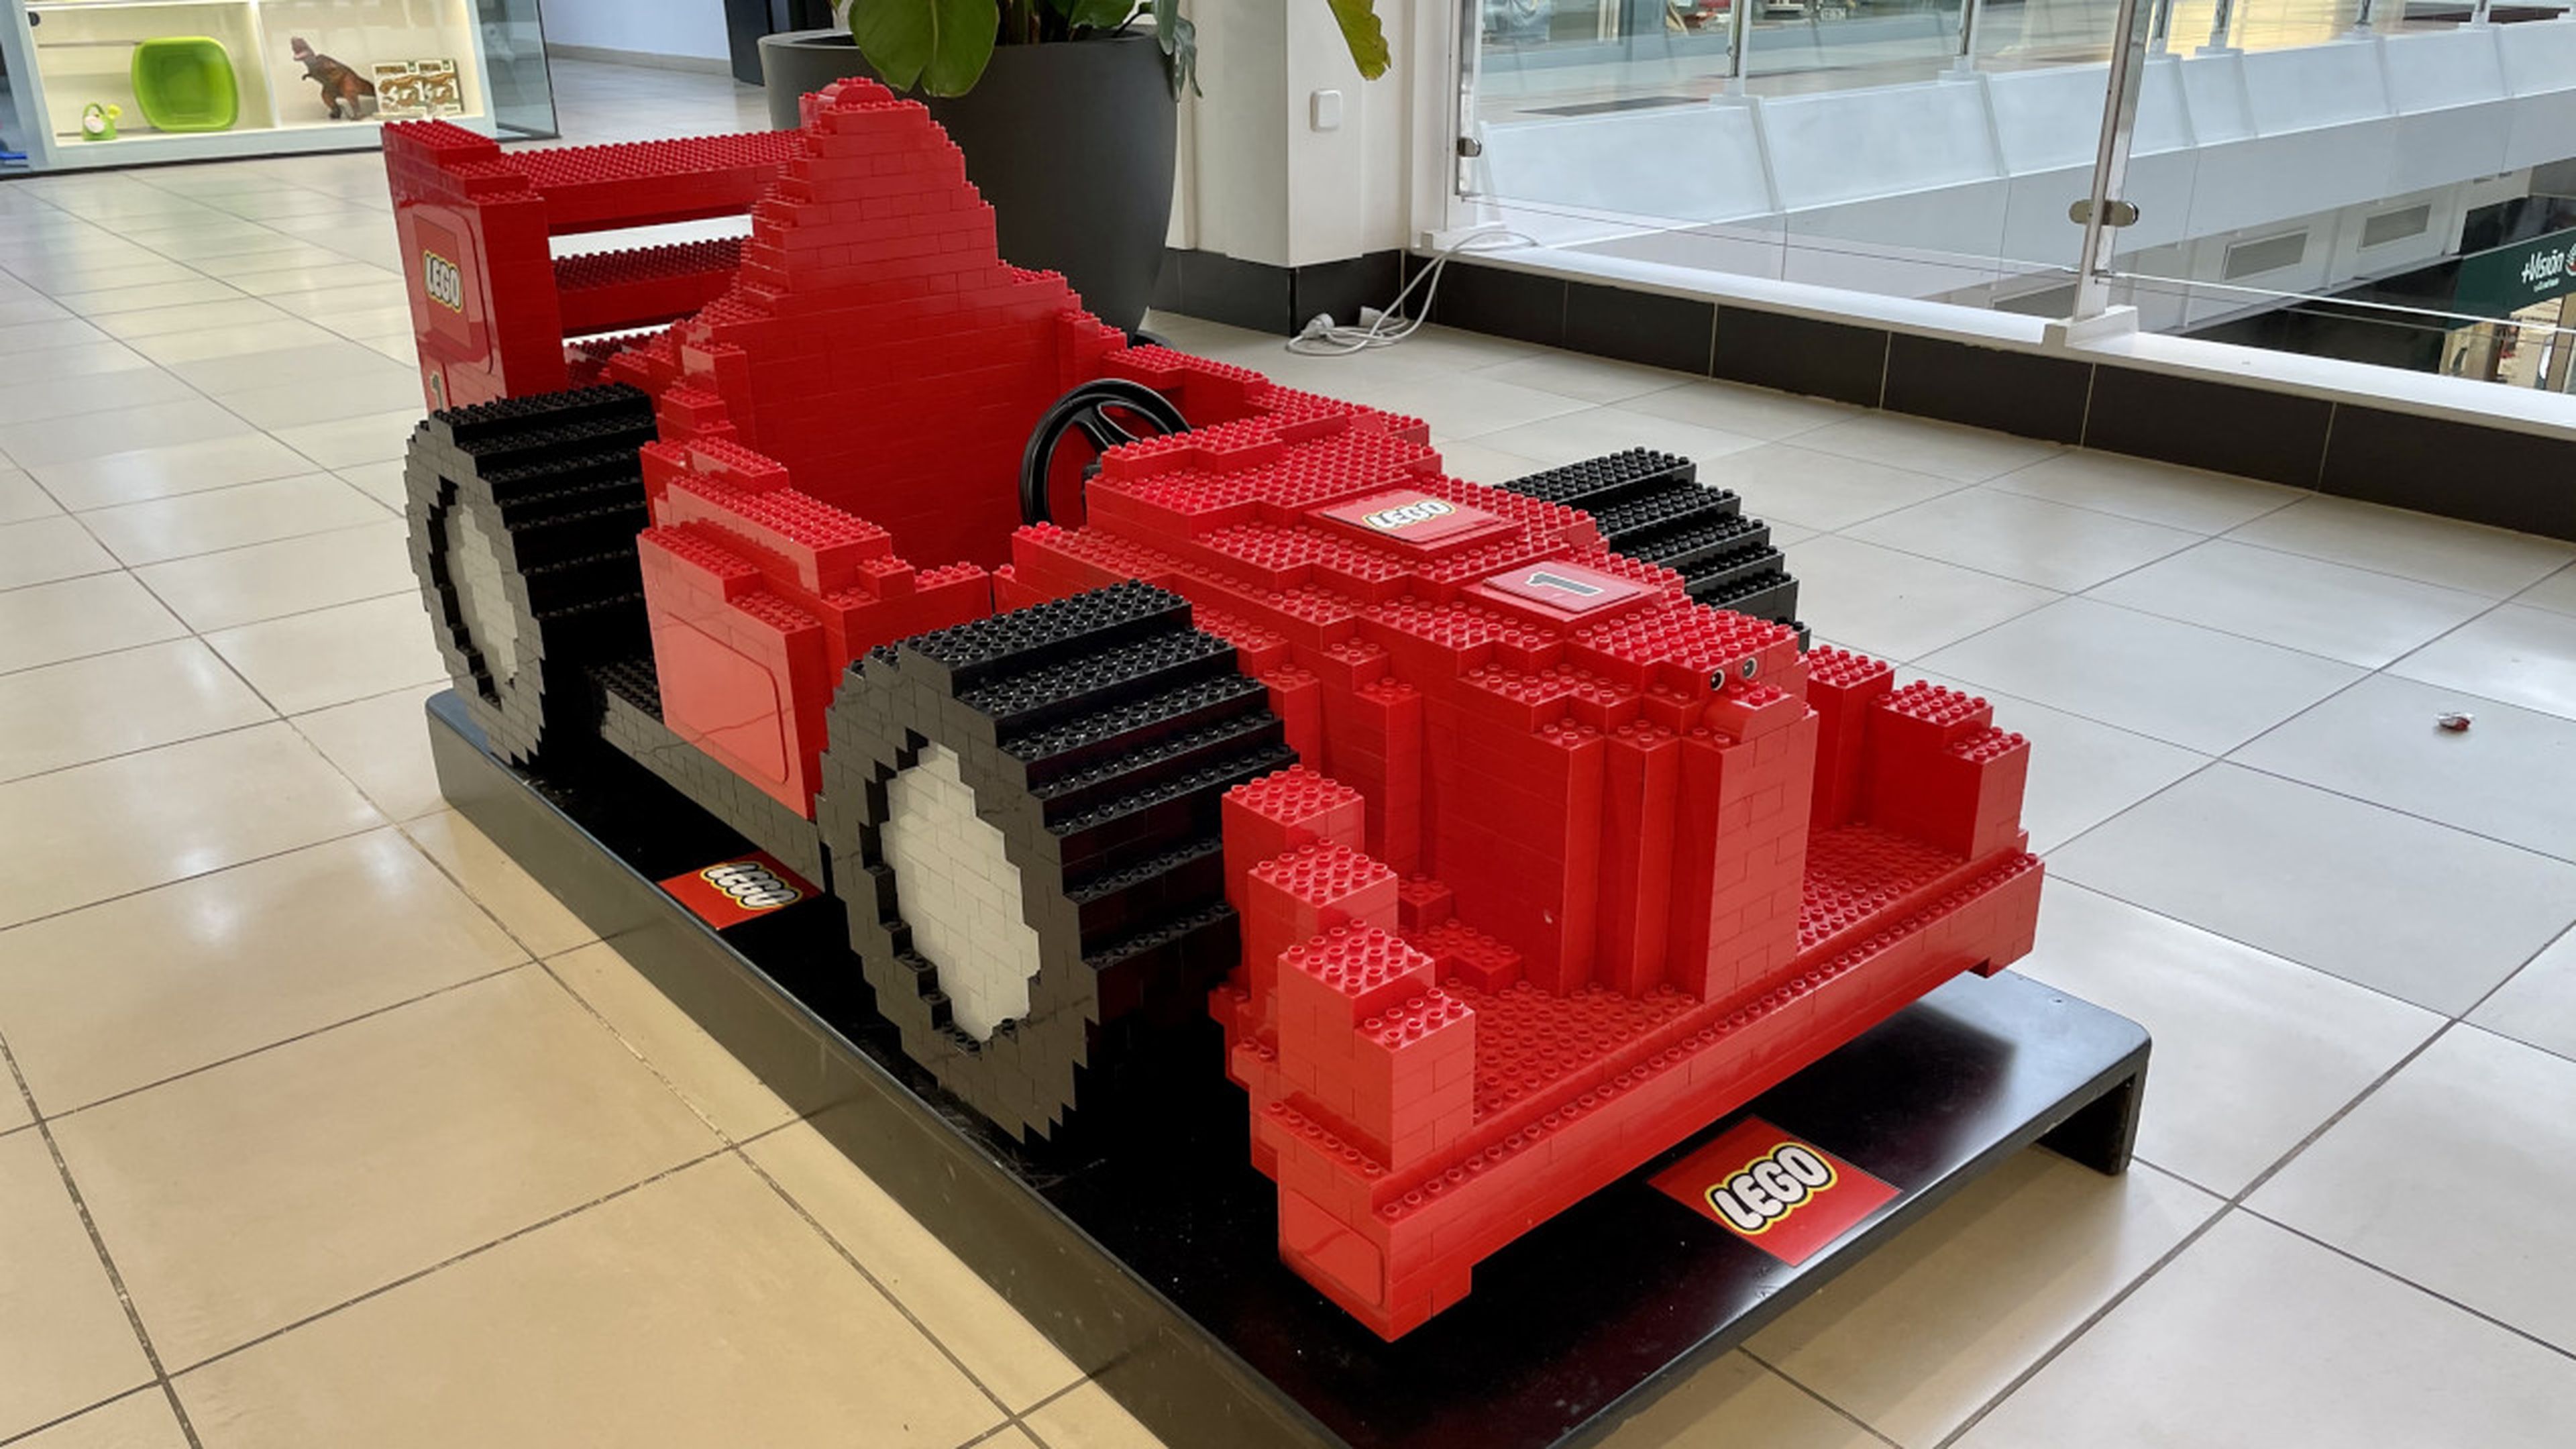 Lego exposición